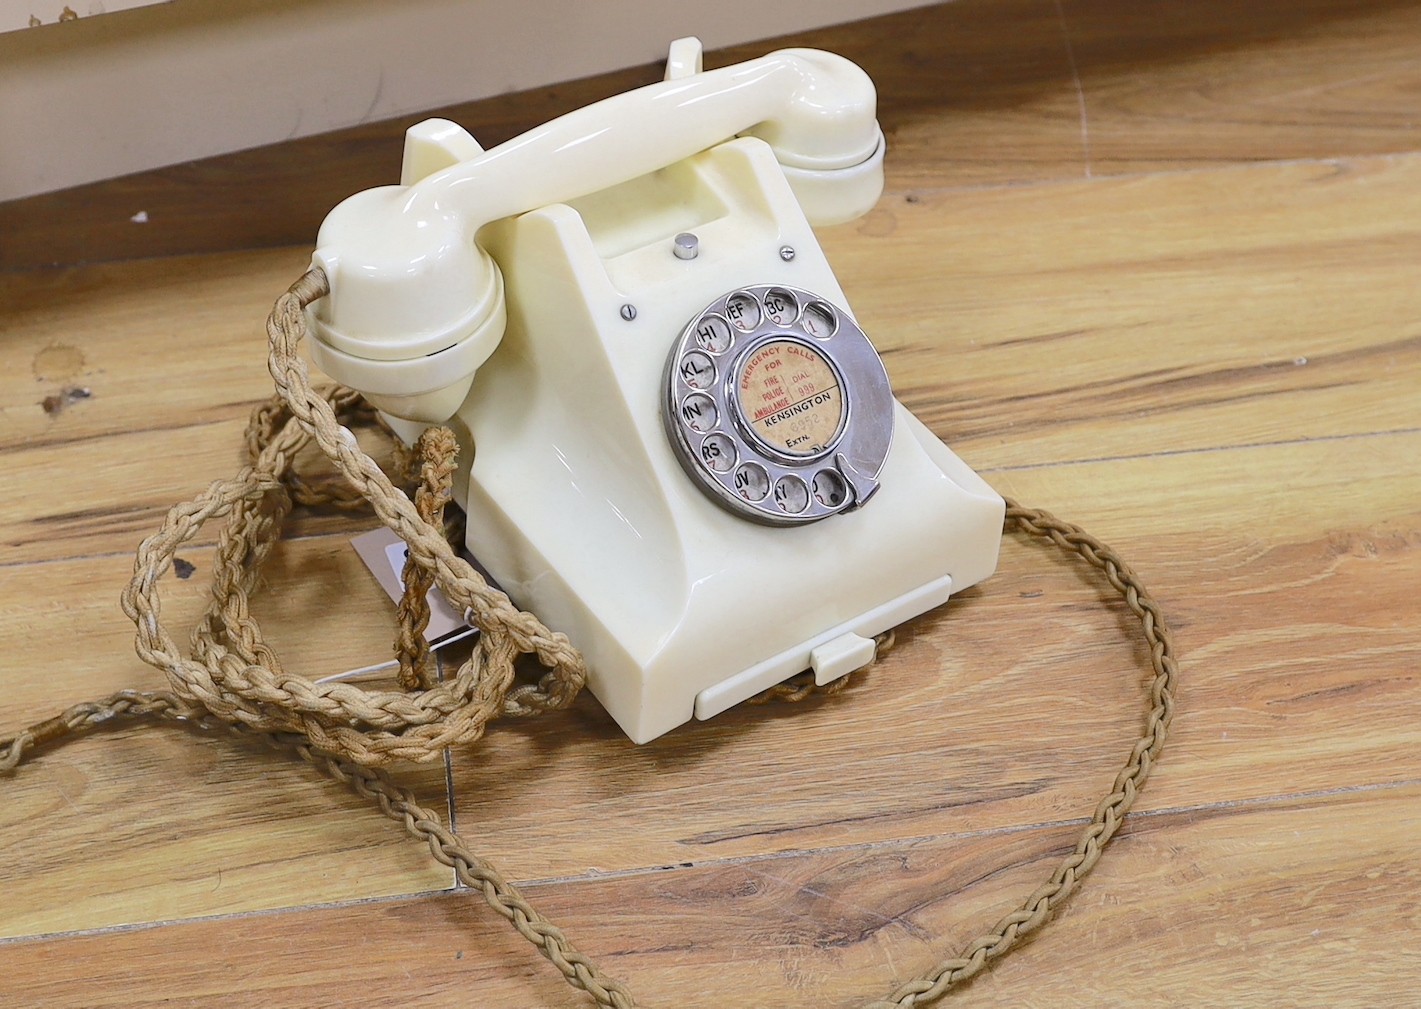 A rare cream coloured bakelite GPO 300 Series telephone hand set, 1940's